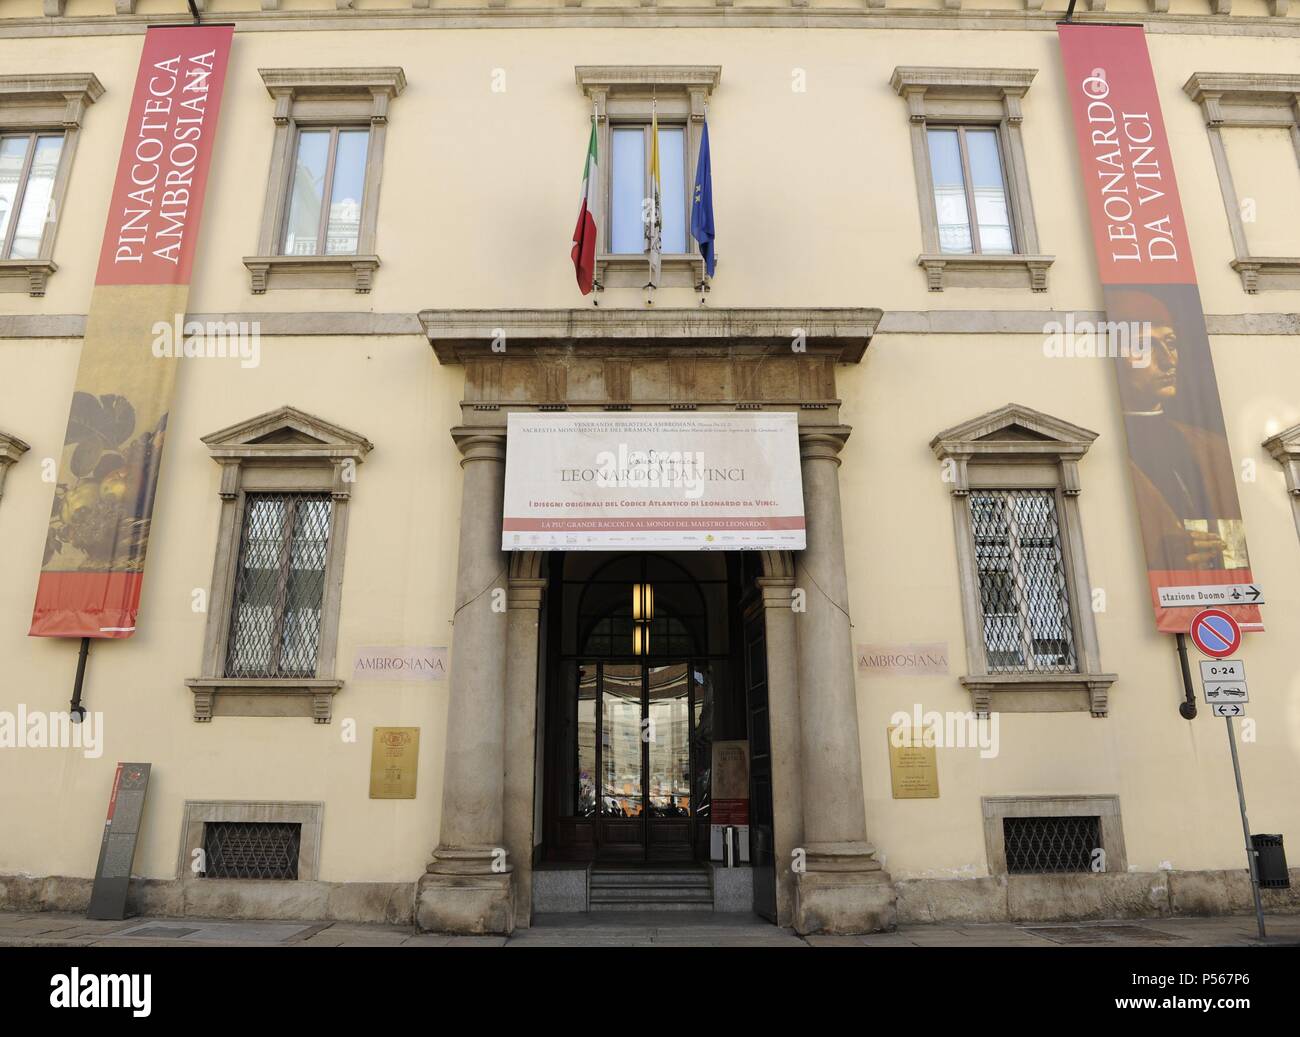 Italy. Milan. Ambrosiana Gallery. Facade. Stock Photo